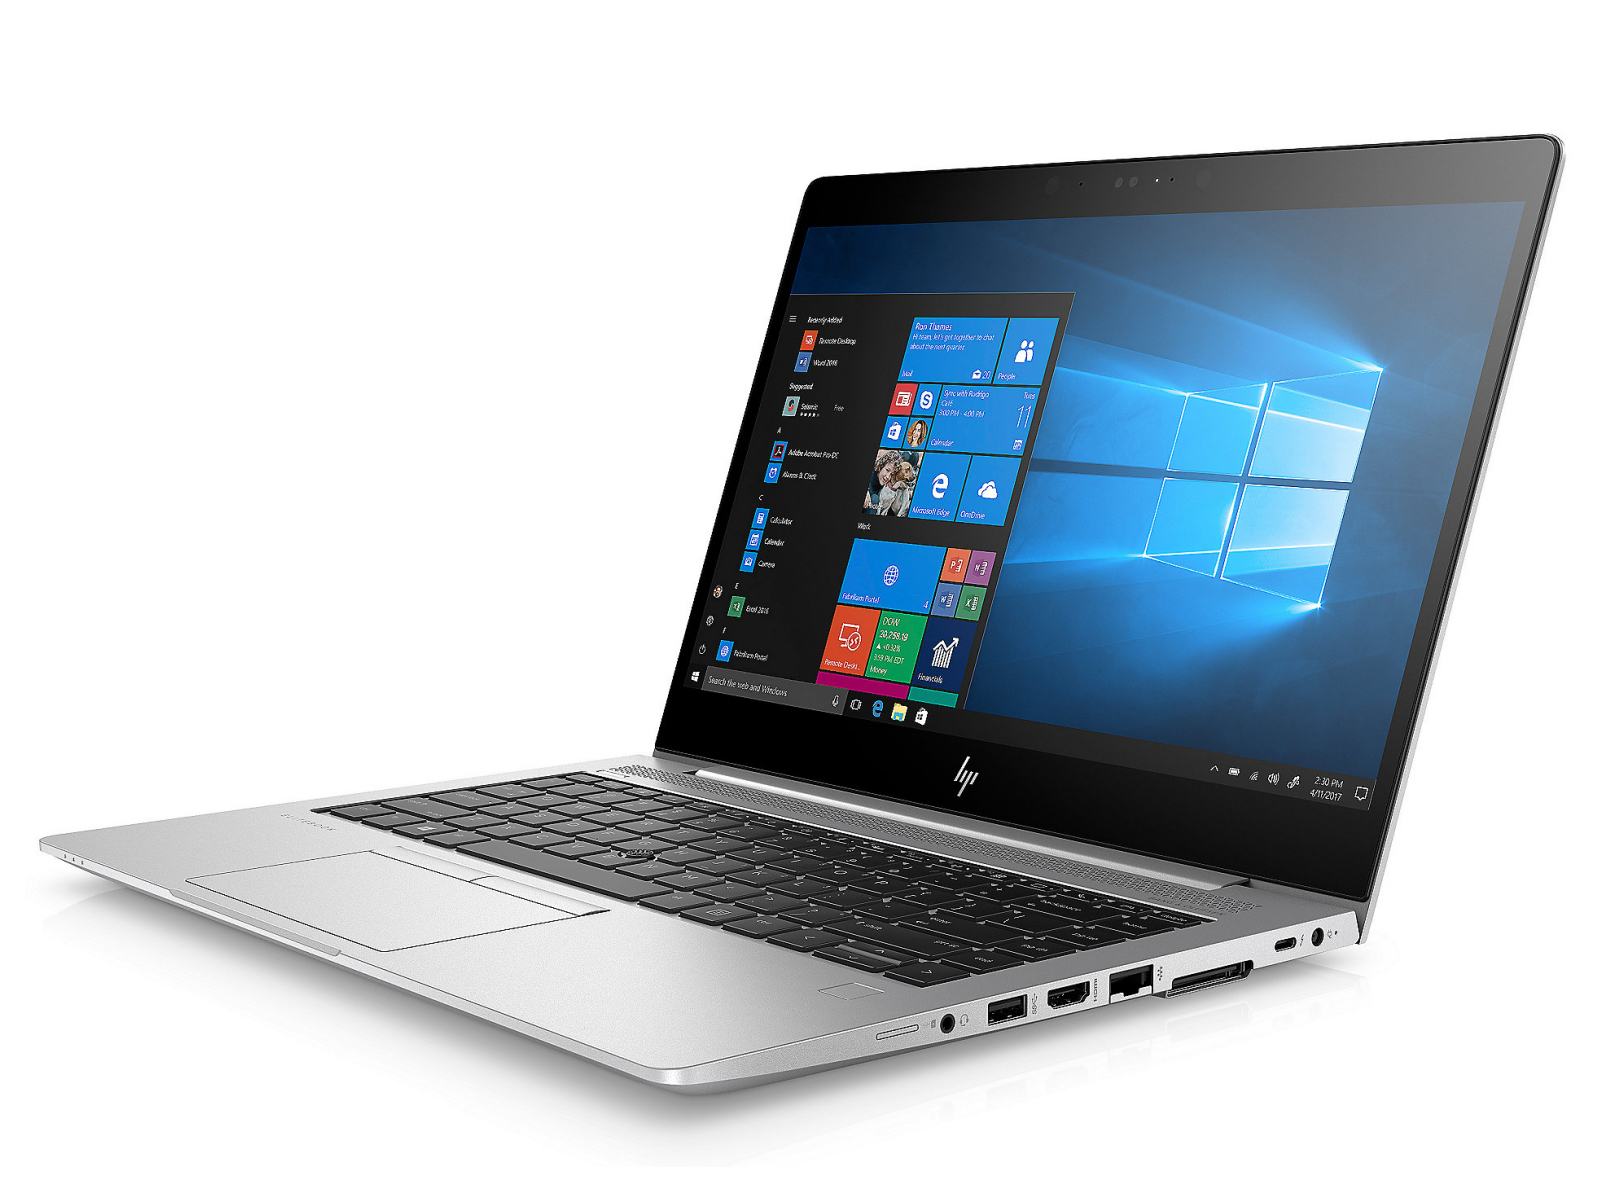 Mua Bán Laptop Hp EliteBook 840 G5 Cũ Mới Giá Rẻ/ 14 inch/ Core i5-8250u Thế hệ 8/ Đồ họa UHD Intel 620 - Phân Phối Laptop Giá Sỉ - Cung Cấp